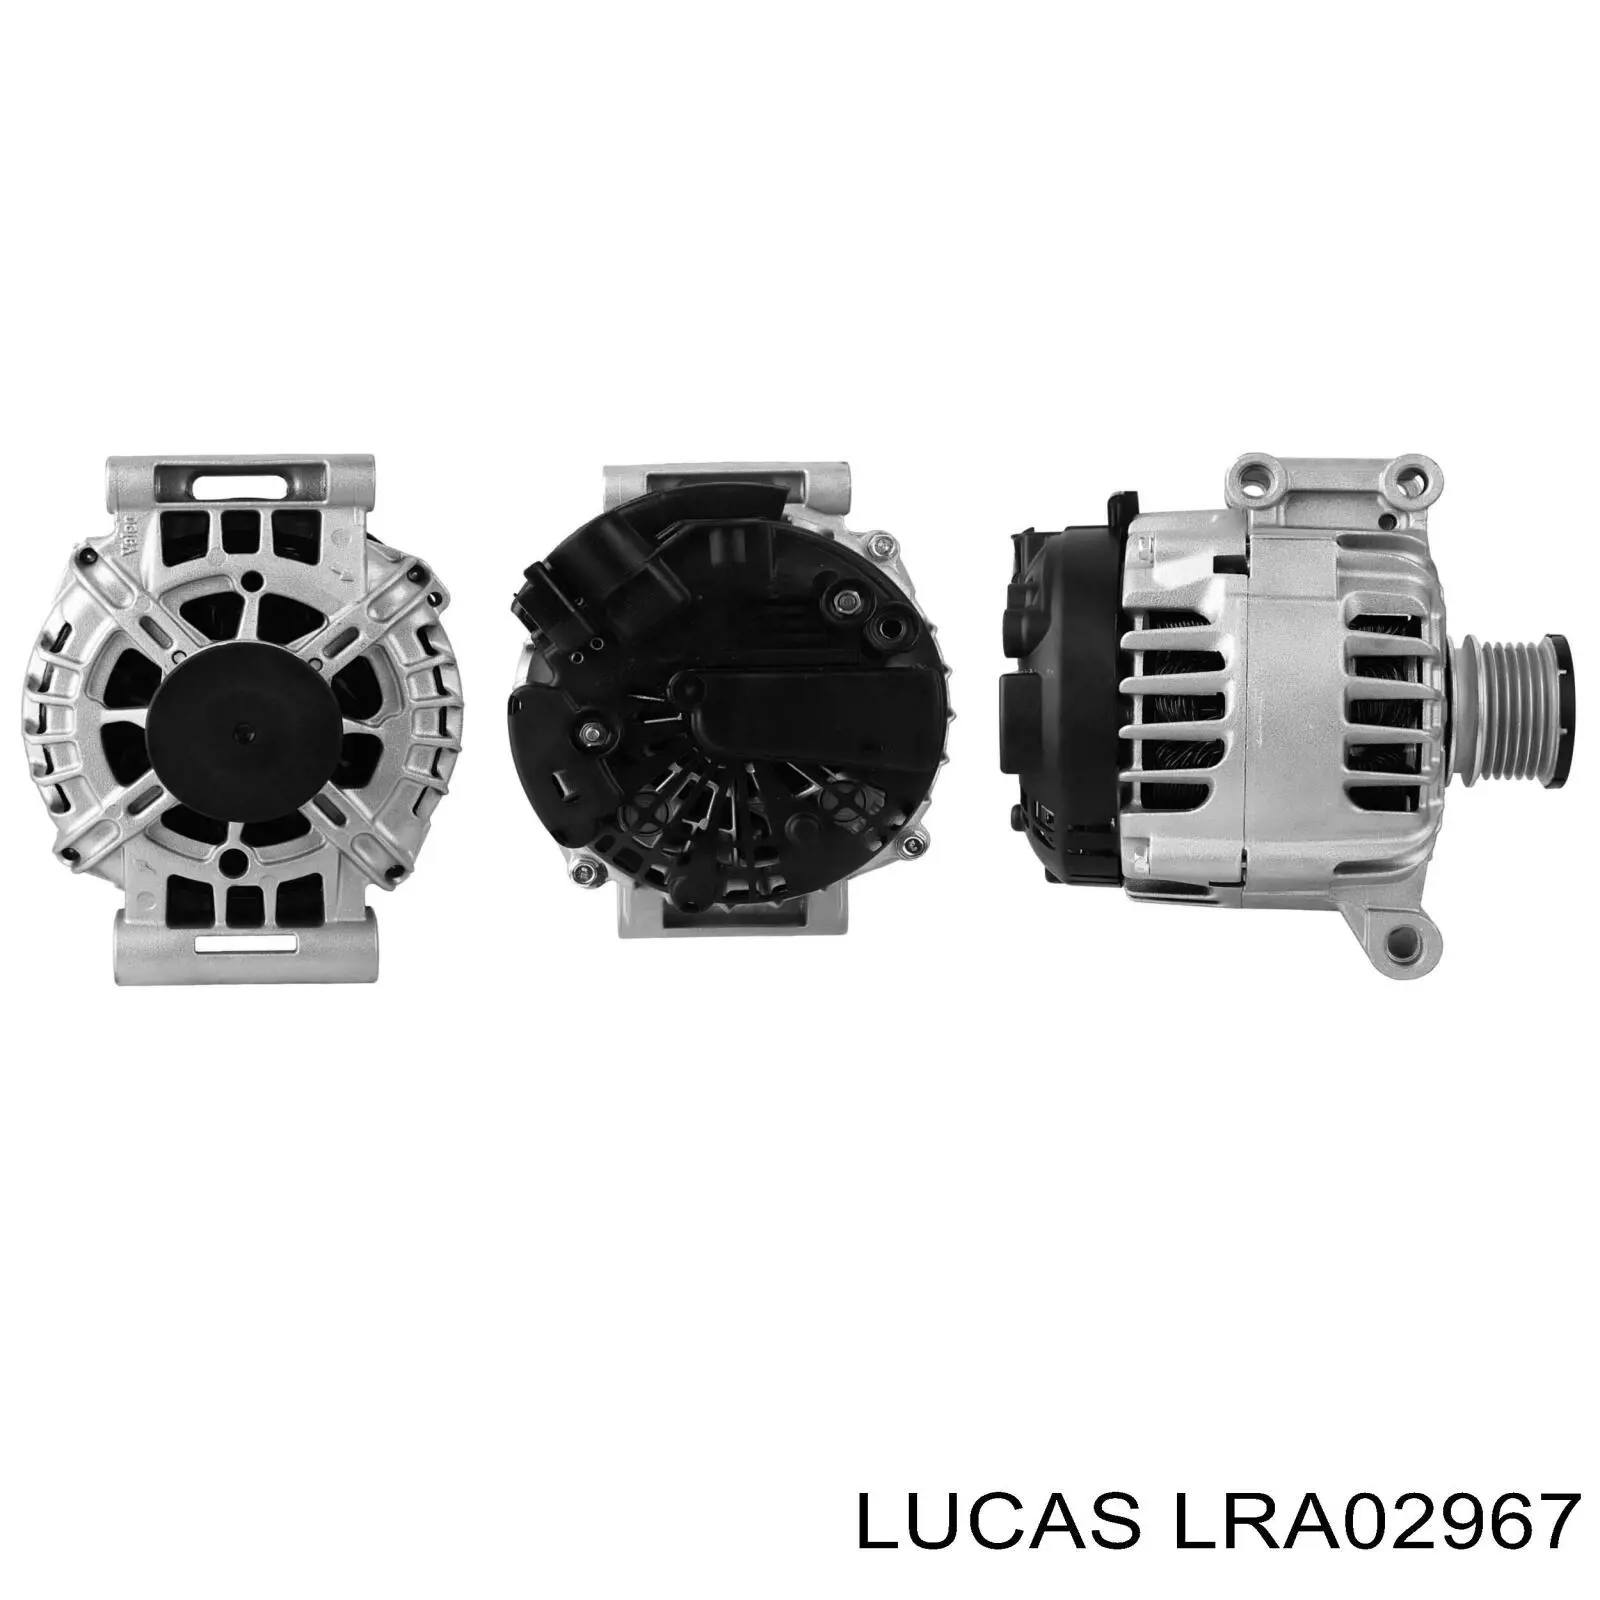 LRA02967 Lucas генератор